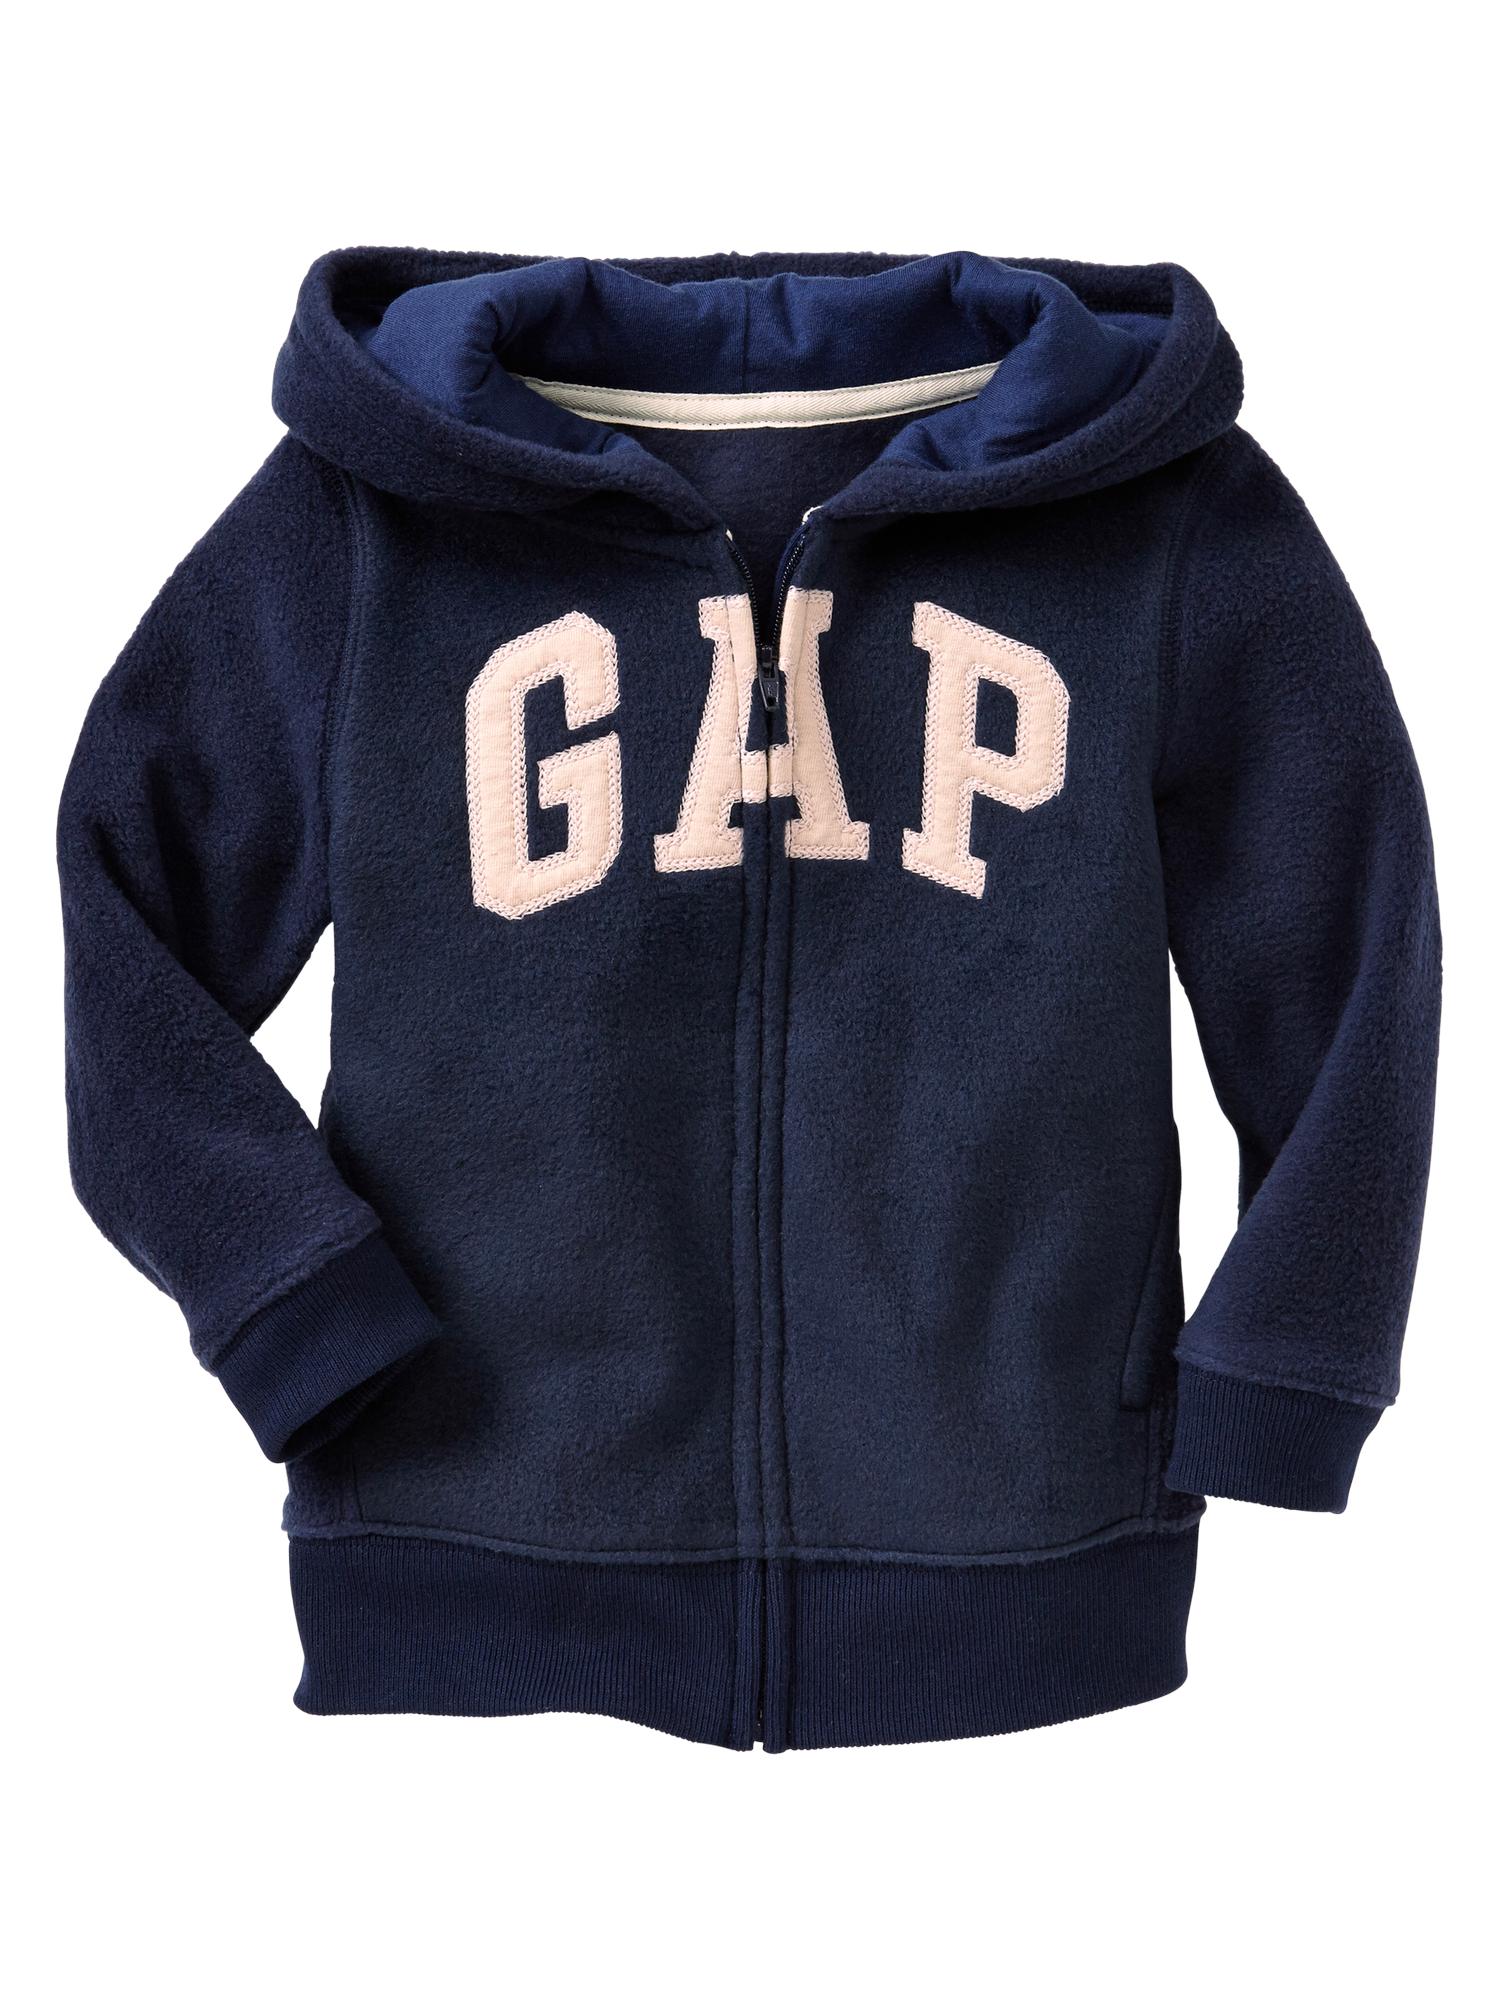 Pro Fleece arch logo zip hoodie | Gap